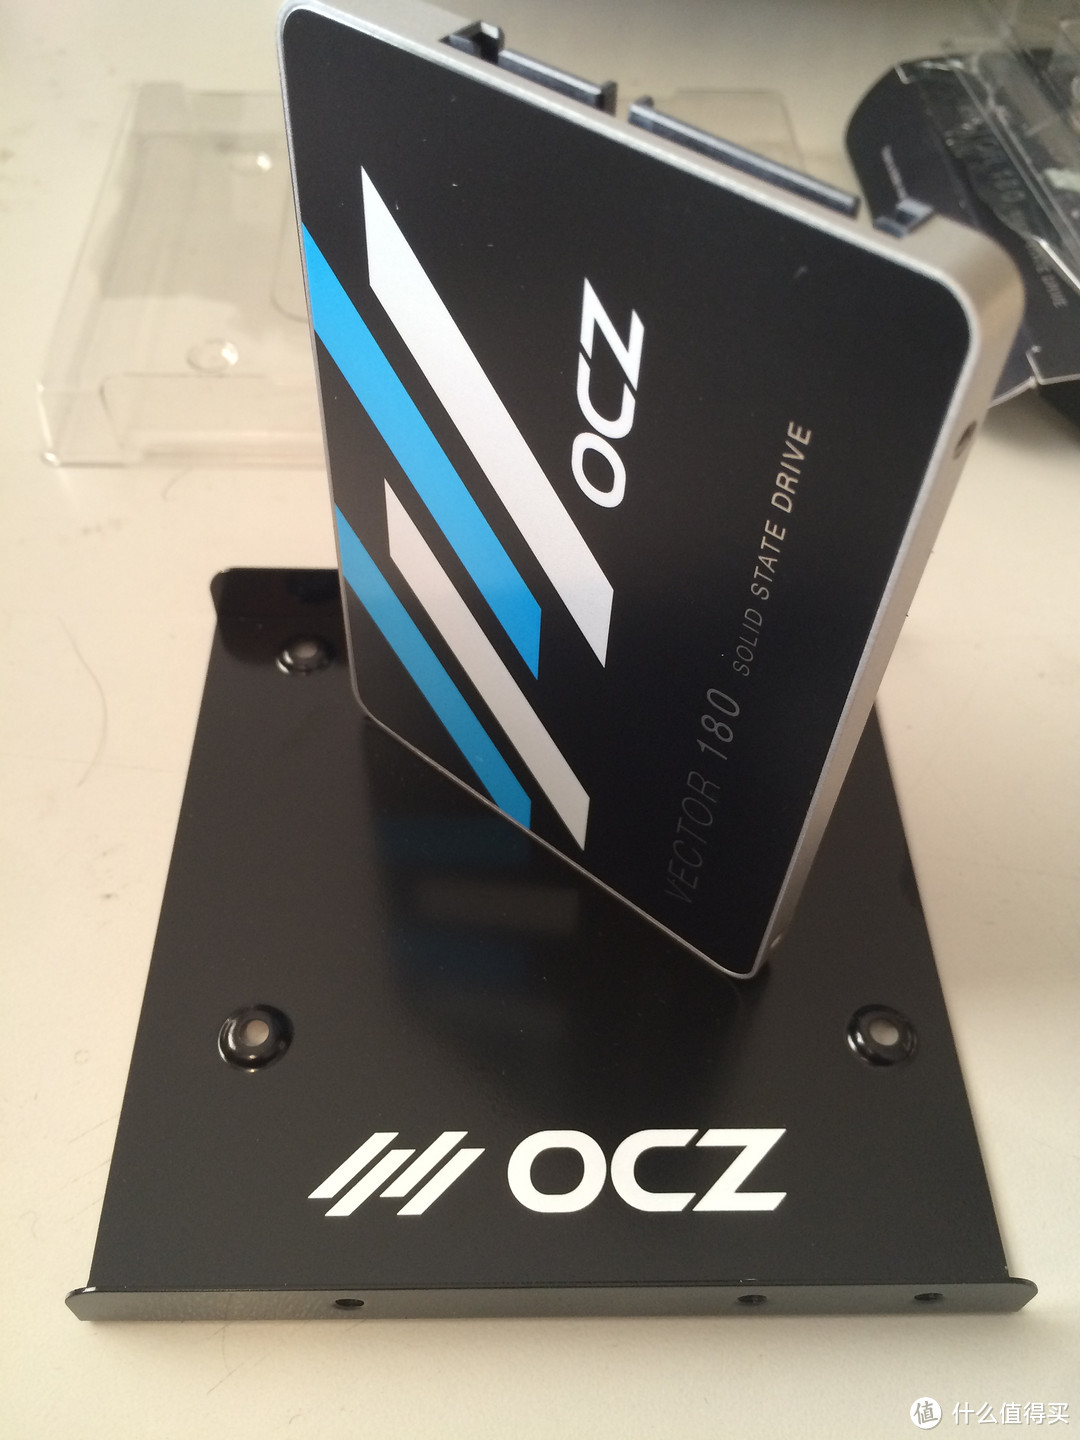 15年黑五淘来的 OCZ 饥饿鲨 Vector180 240G 固态硬盘